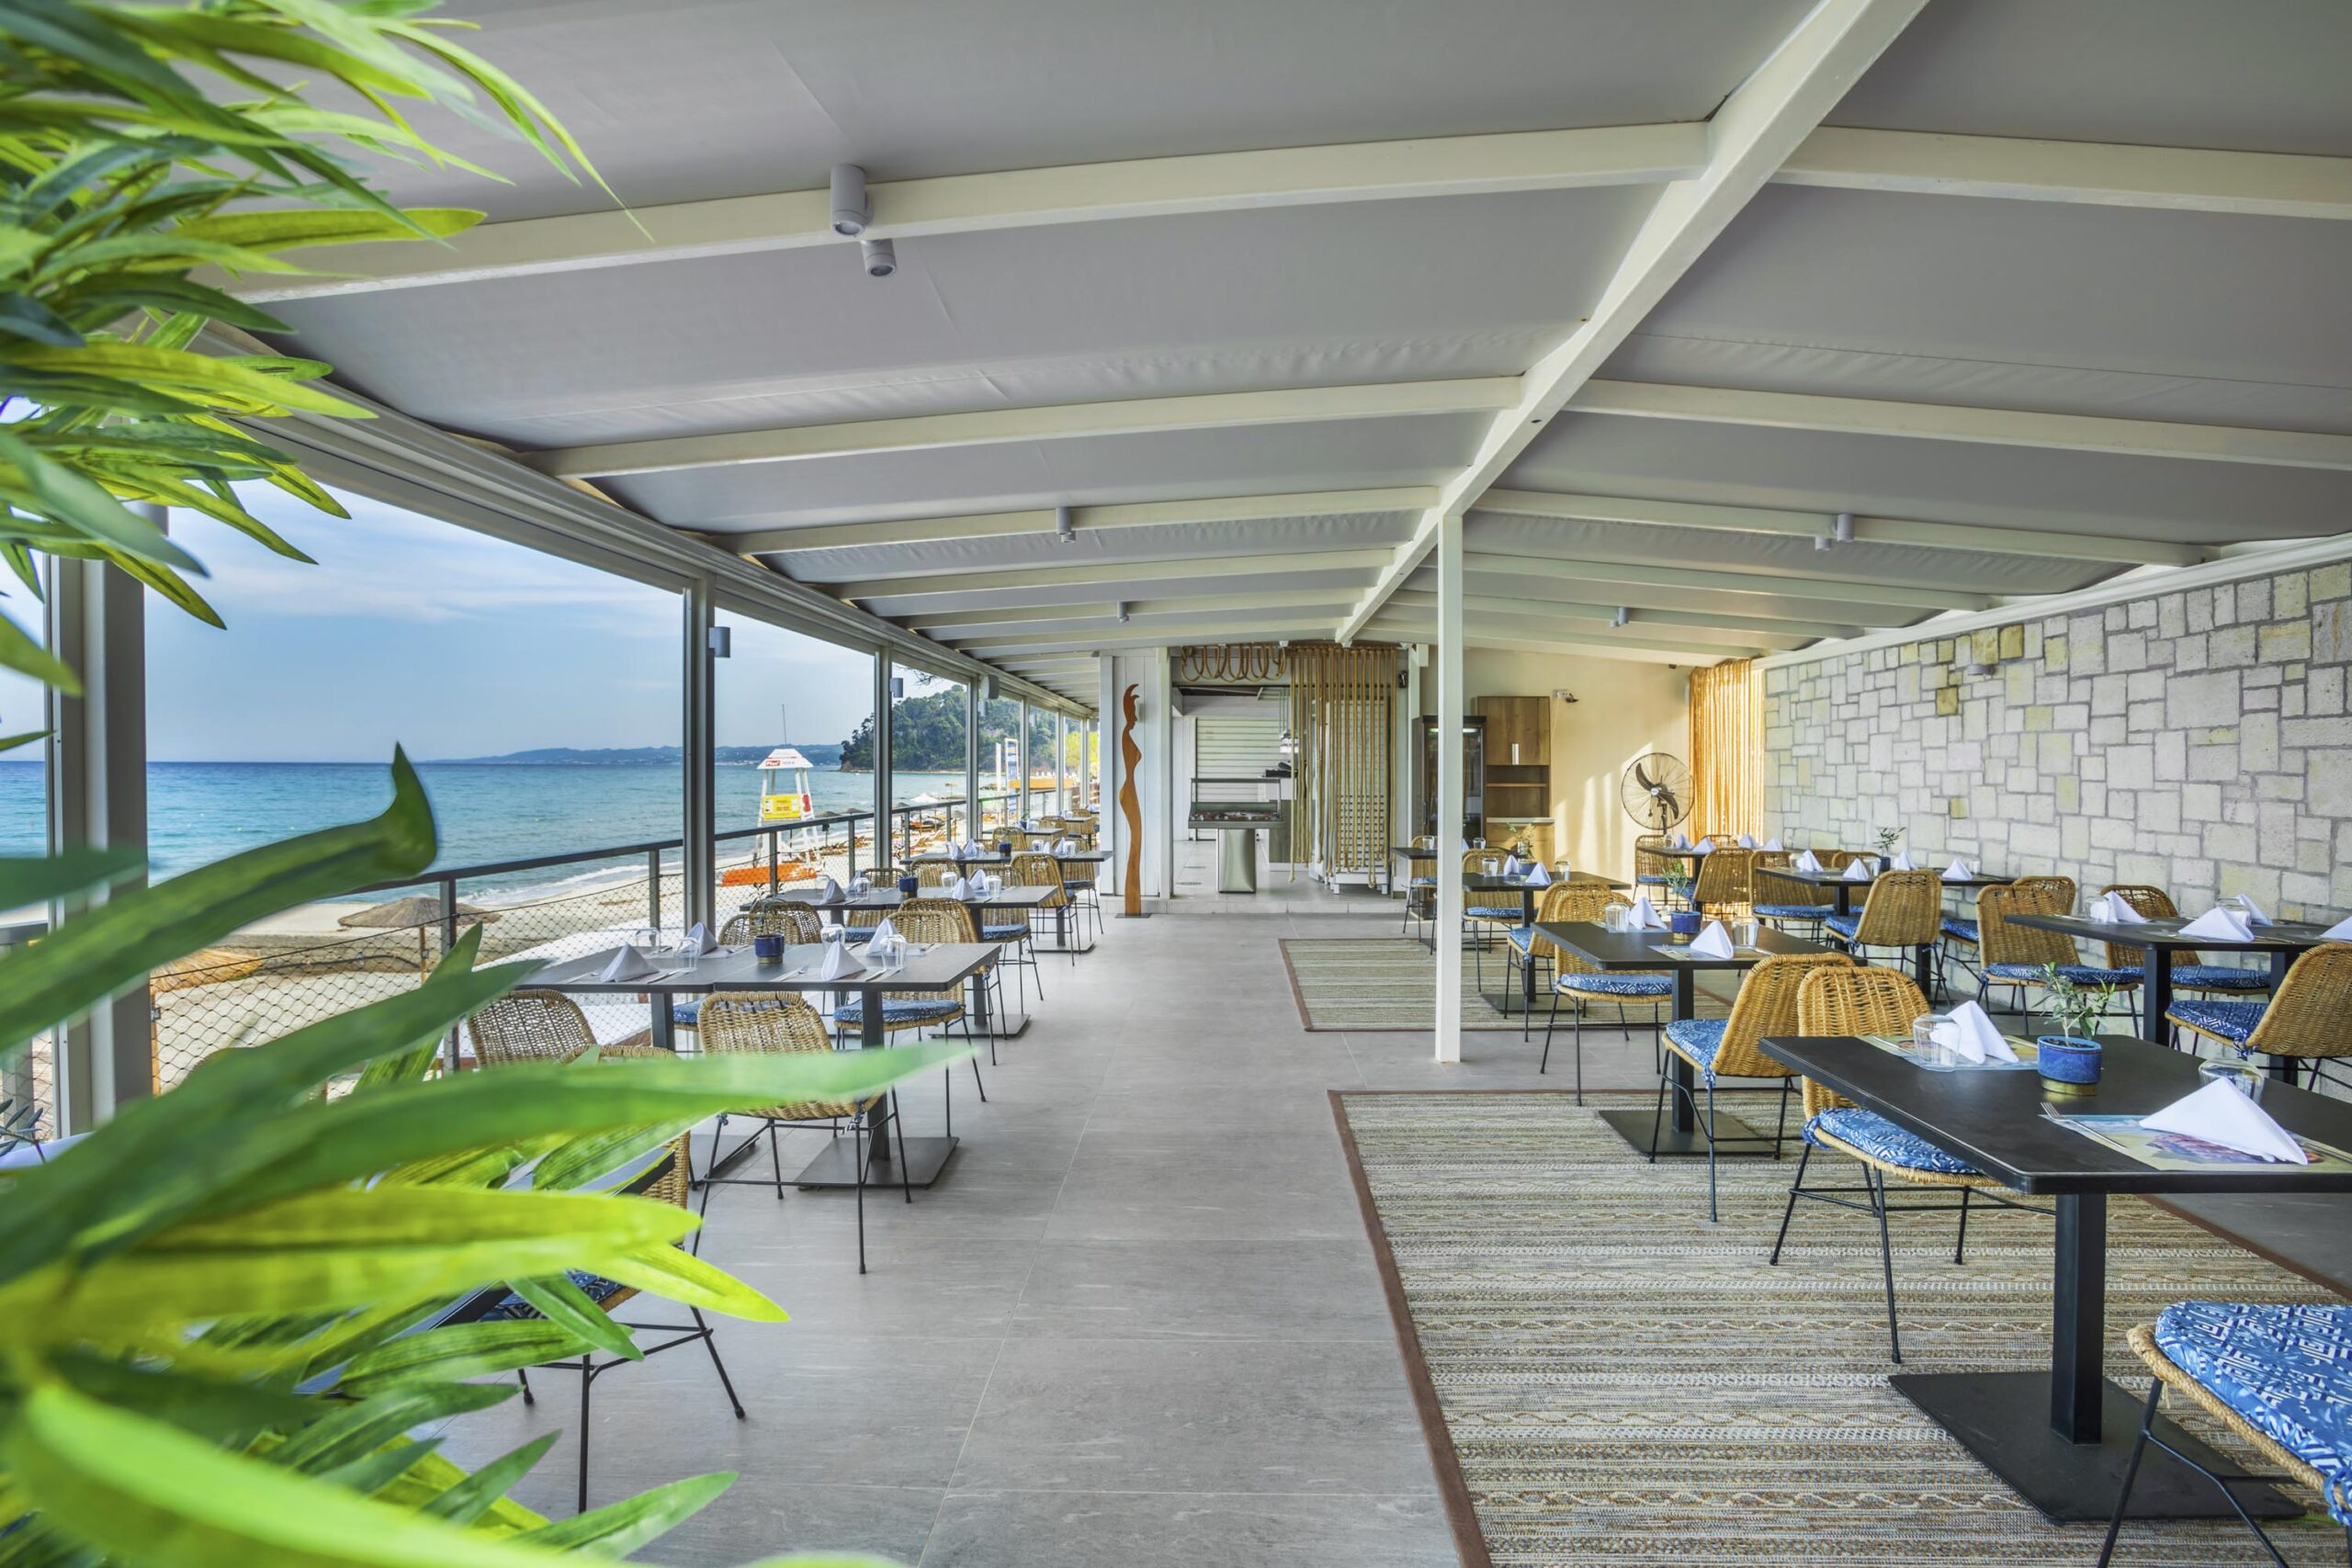 Restaurant de midi pour manger des snacks et des salades et des petits encas à Hôtel Ammon Zeus 5 étoiles situé sur la plage de Kallithea à Chalcidique en Grèce du nord